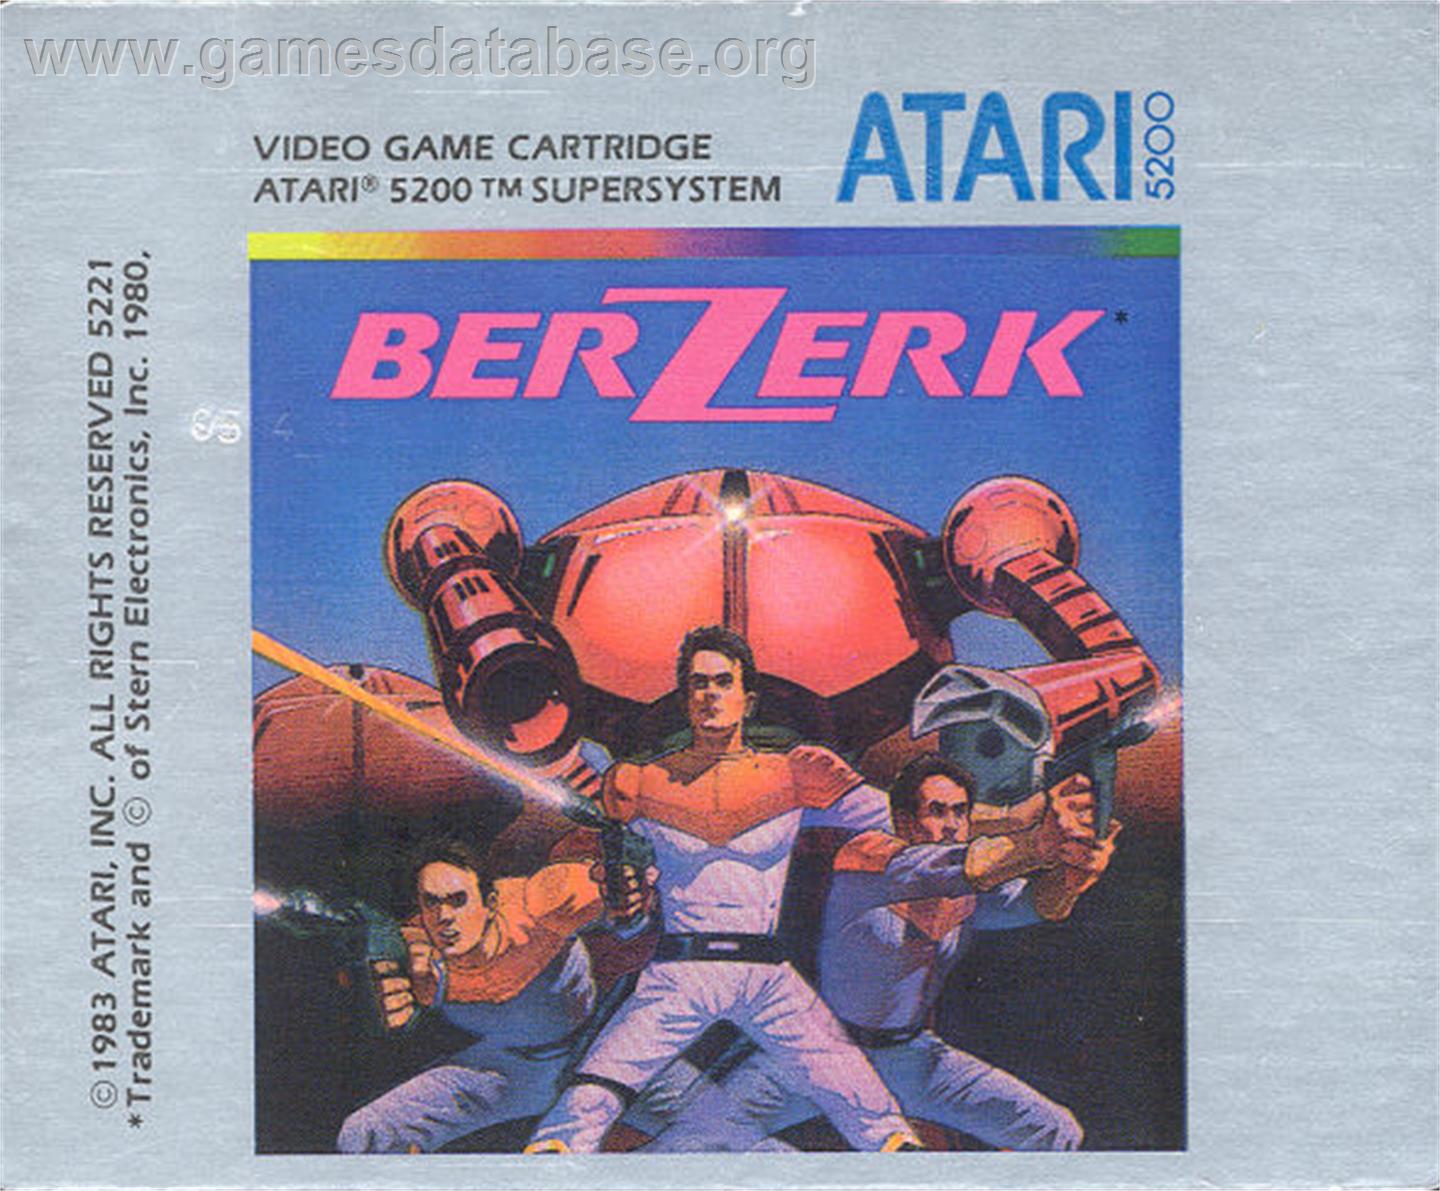 Berzerk - Atari 5200 - Artwork - Cartridge Top